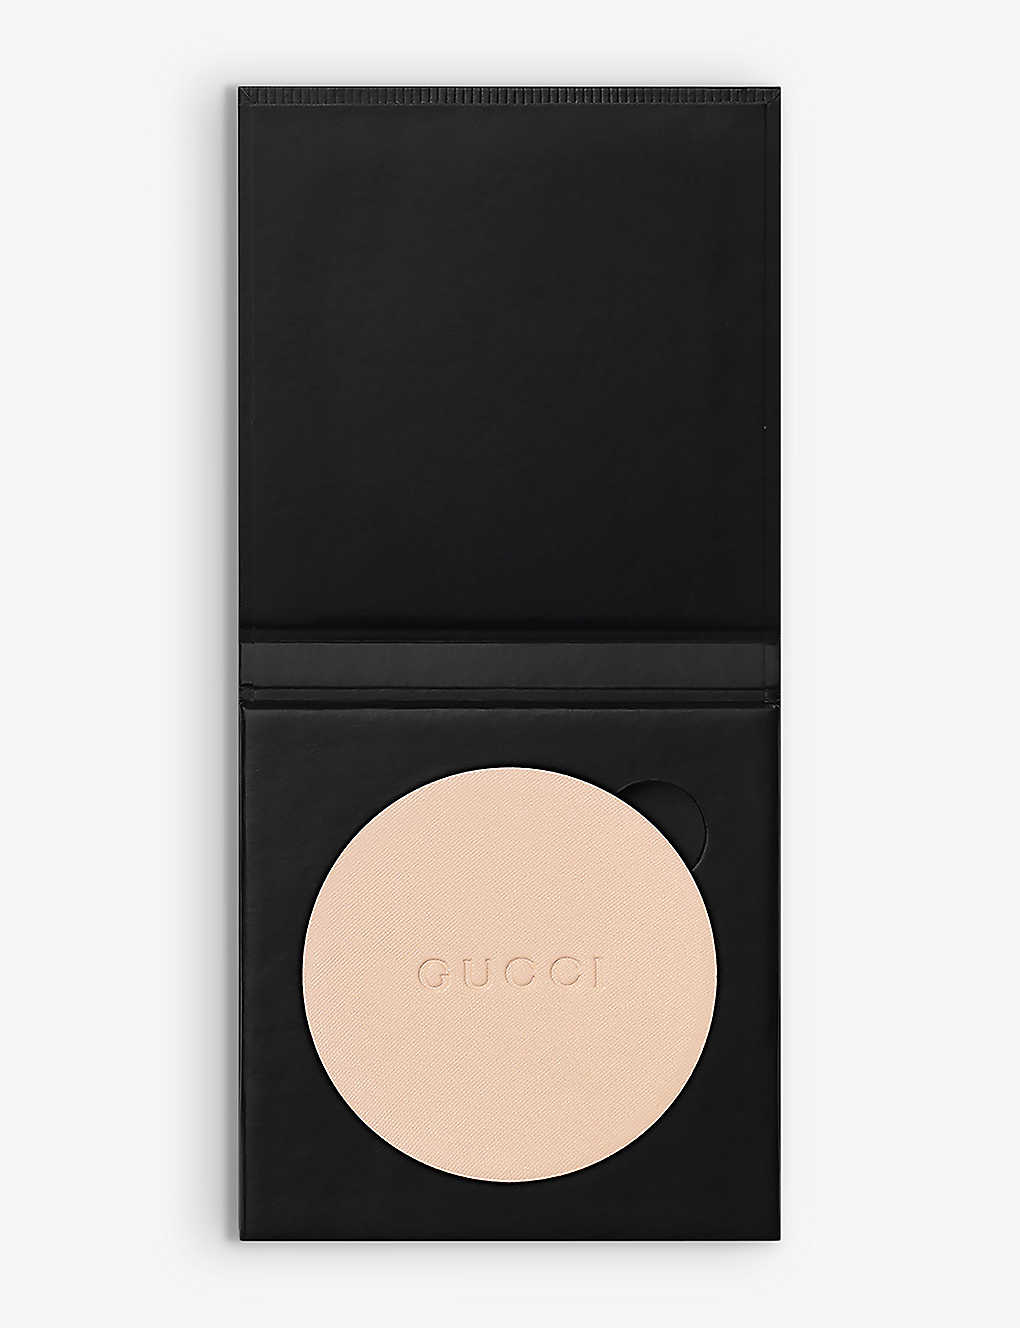 Gucci 5 Poudre De Beauté Matte Compact Powder Refill 10g